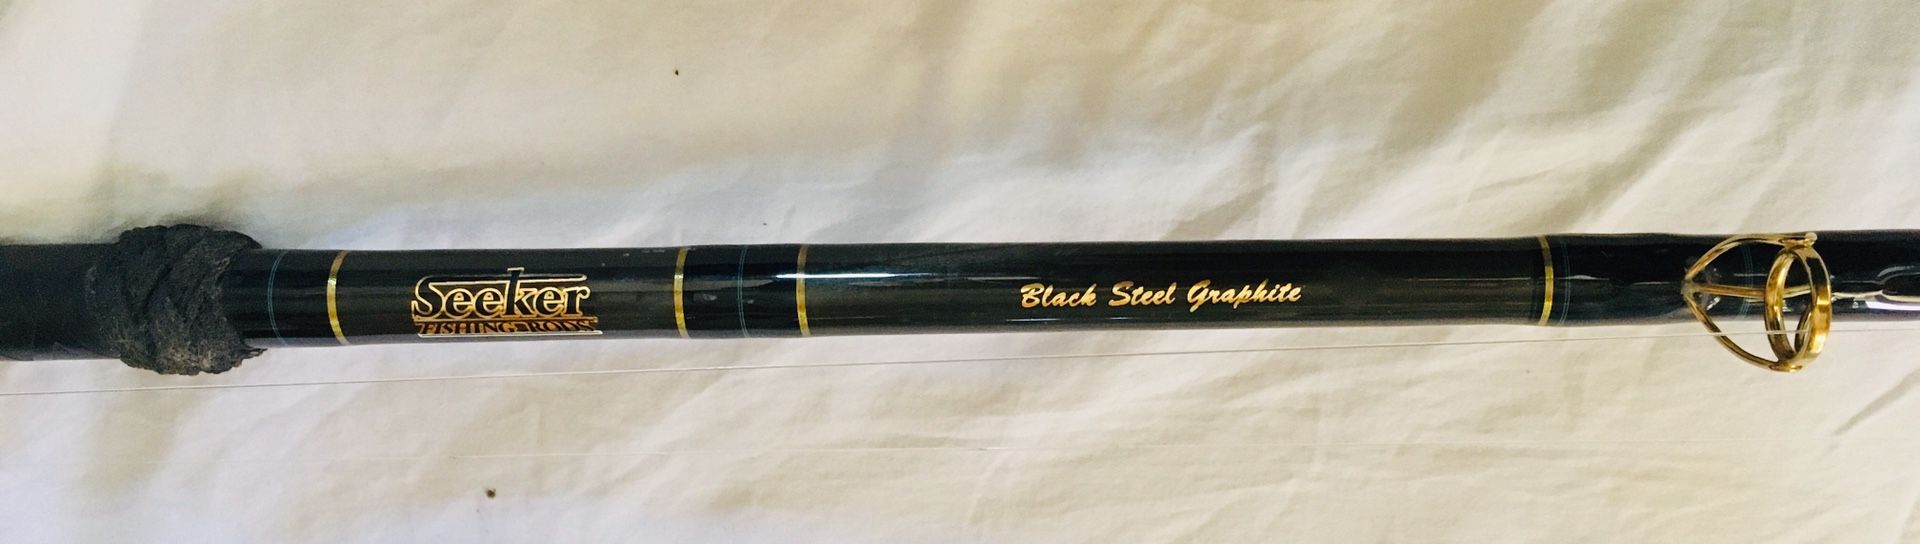 Seeker Black Steel G 6490-9' CT Cork Tape Rod for Sale in San